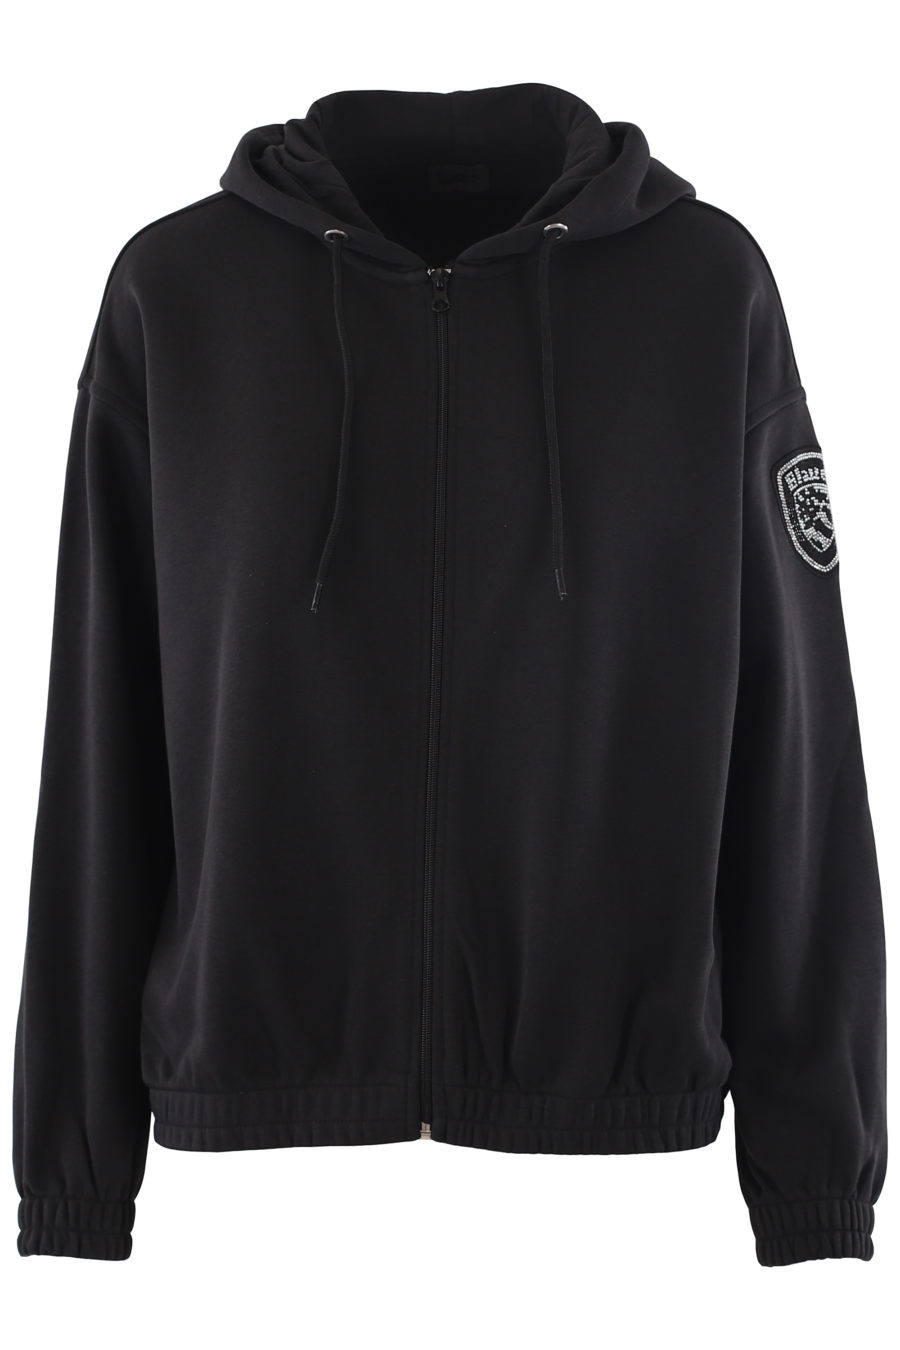 Schwarzes Sweatshirt mit Kapuze und Kristallen als Logo - IMG 6782